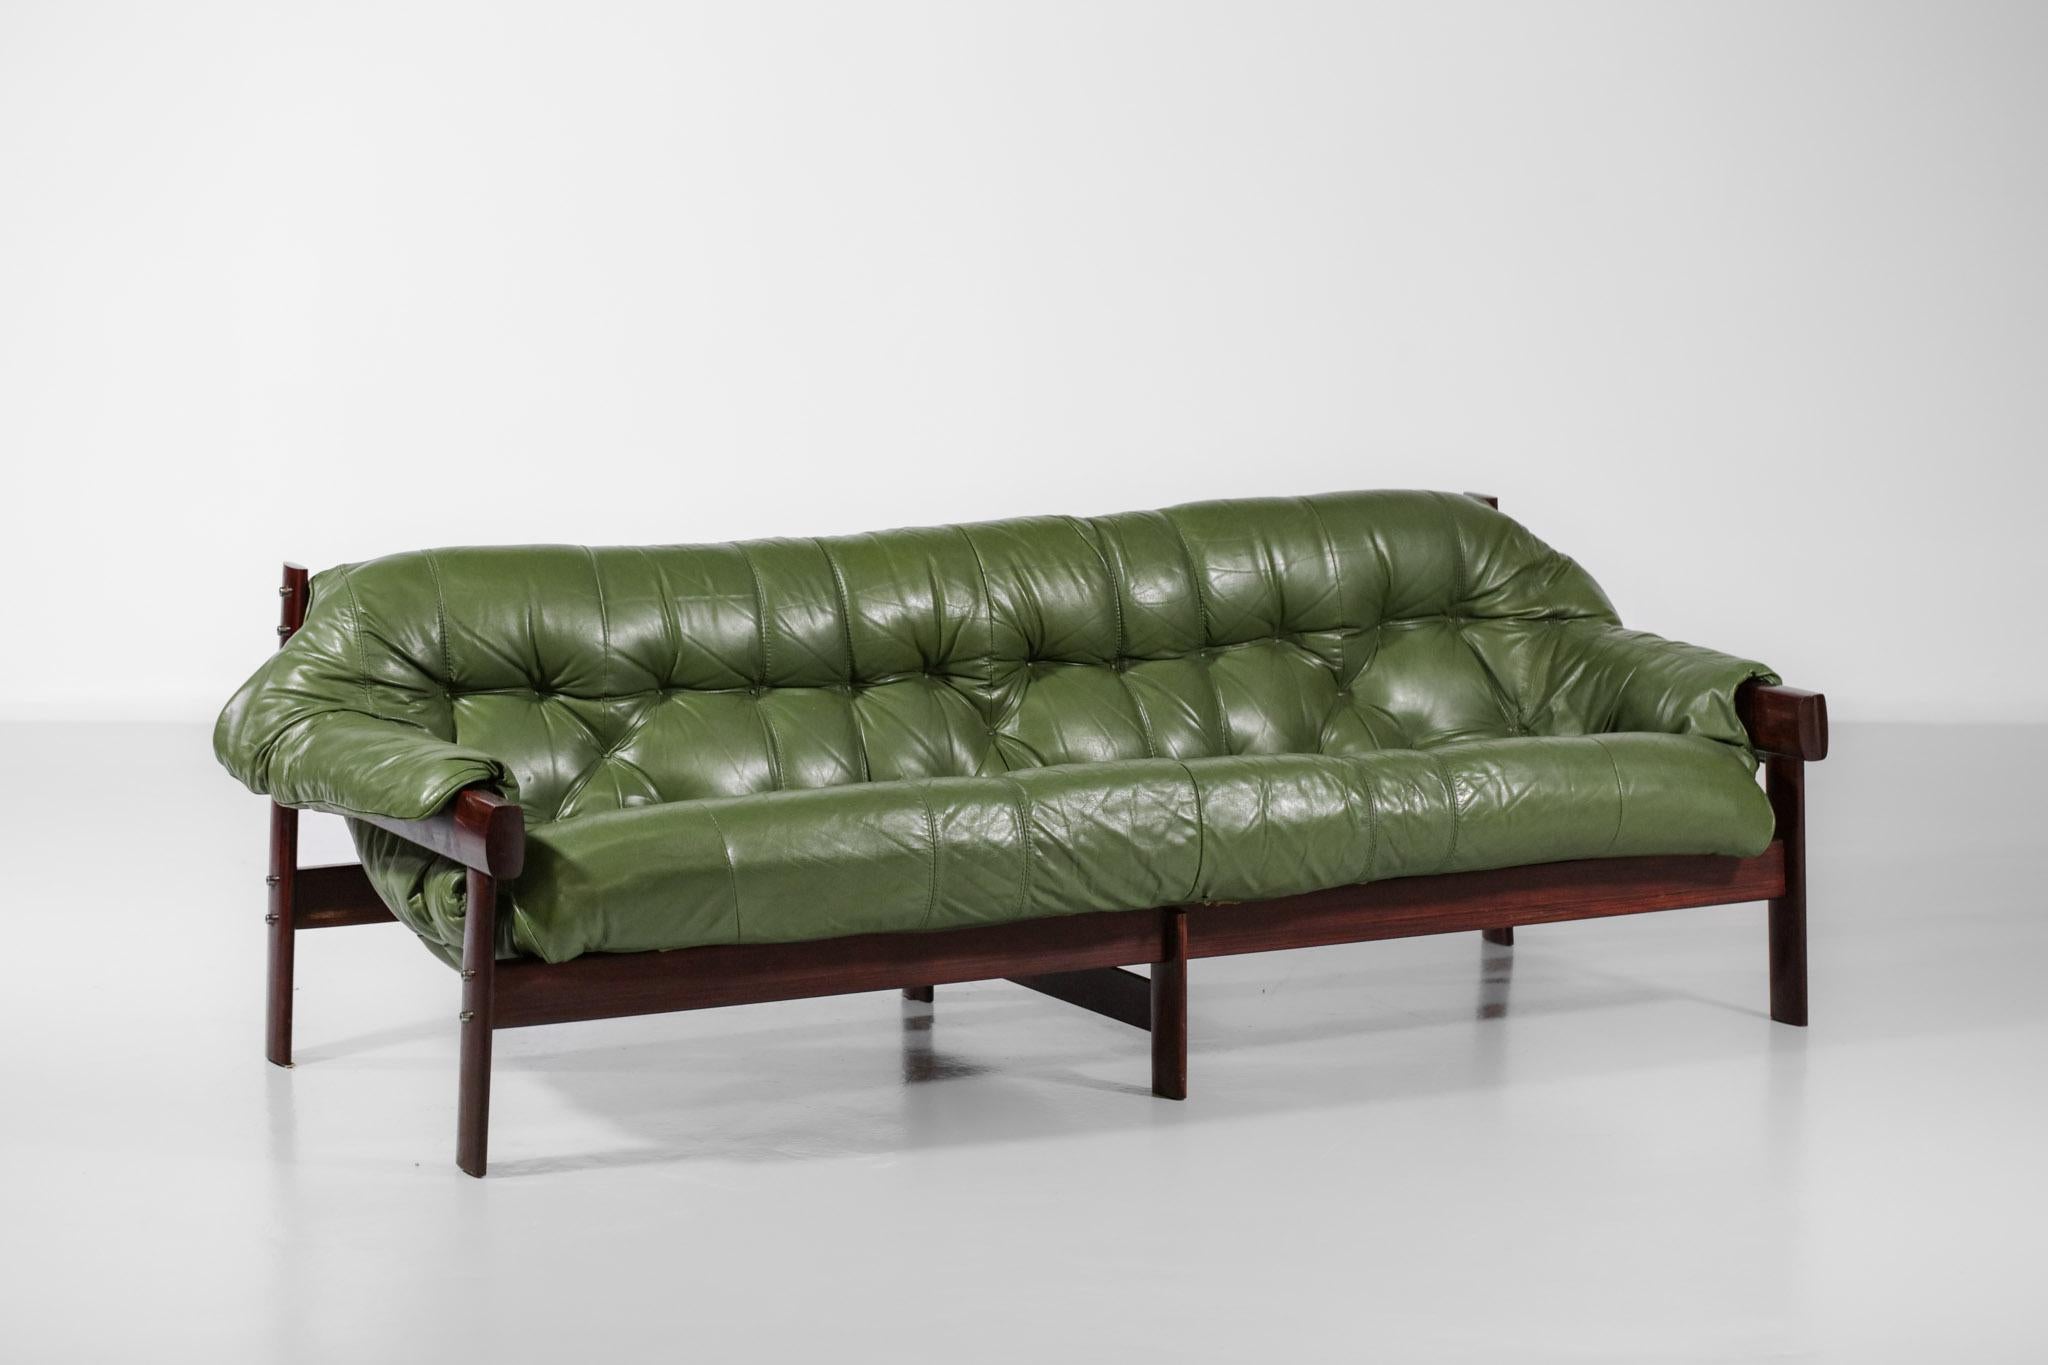 Three-Seater Sofa by Brazilian Designer Percival Lafer Design Leather 3